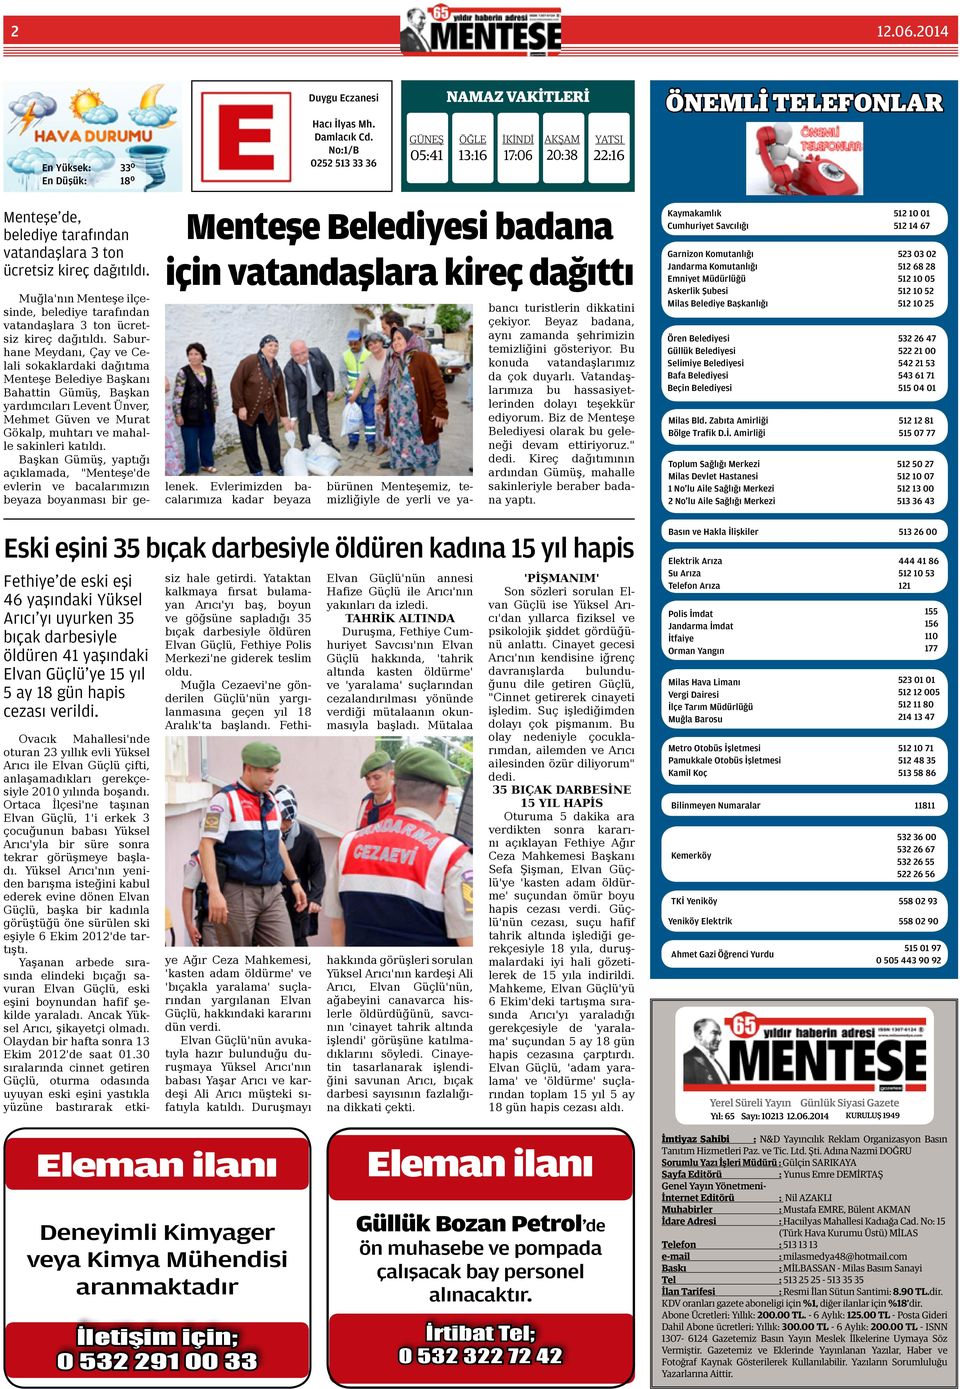 Menteşe Belediyesi badana için vatandaşlara kireç dağıttı Muğla'nın Menteşe ilçesinde, belediye tarafından vatandaşlara 3 ton ücretsiz kireç dağıtıldı.